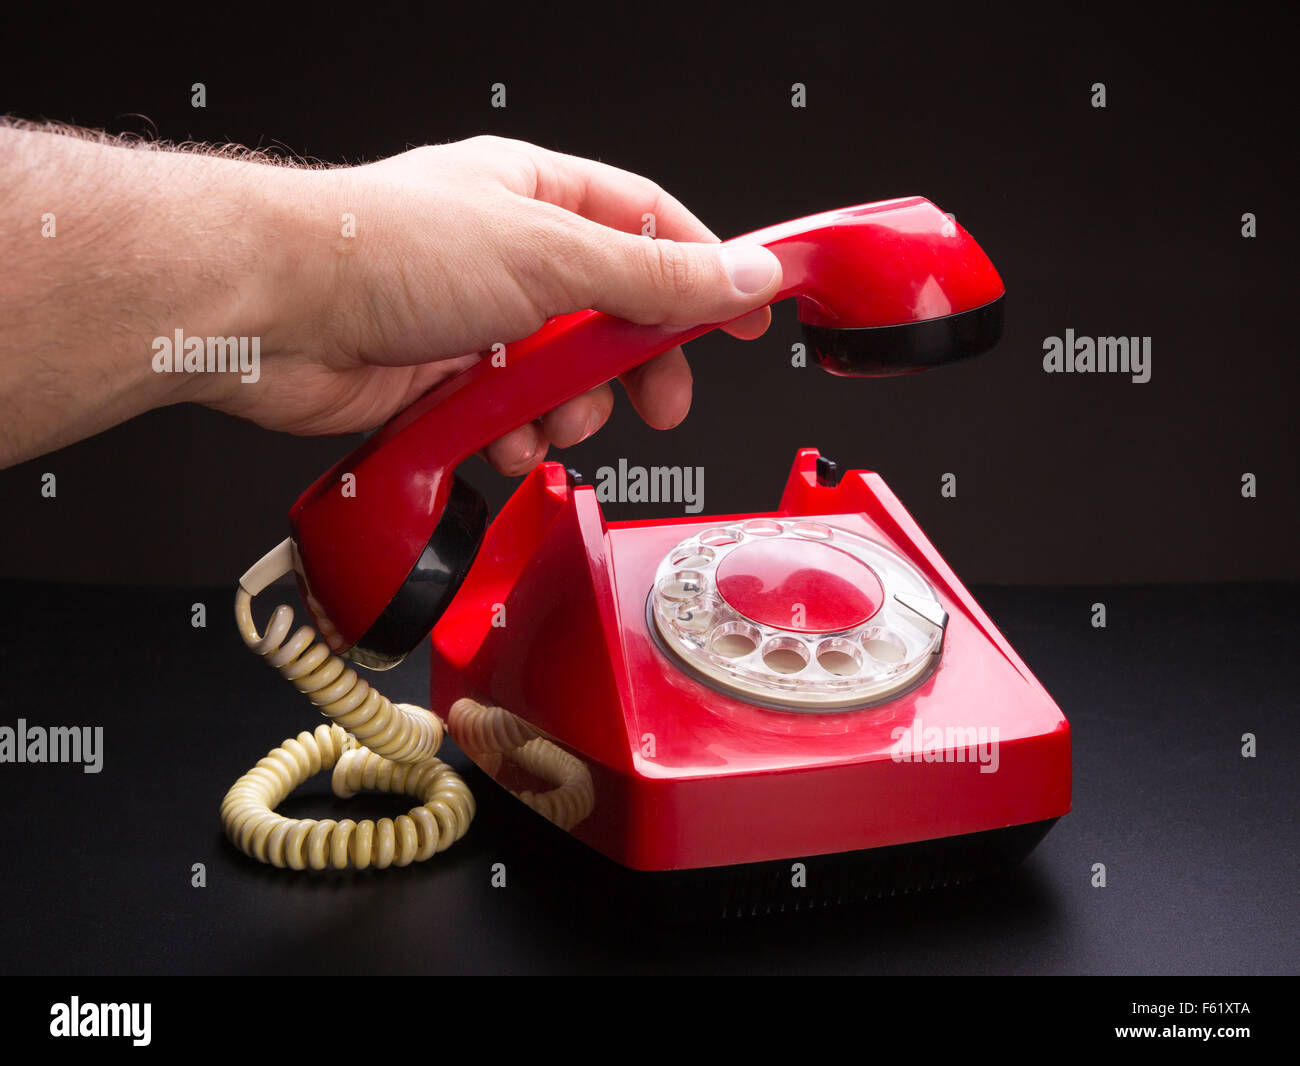 Красный телефон что значит. Красный телефон. Телефонная трубка. Красная трубка телефона. Телефонная трубка в руке.